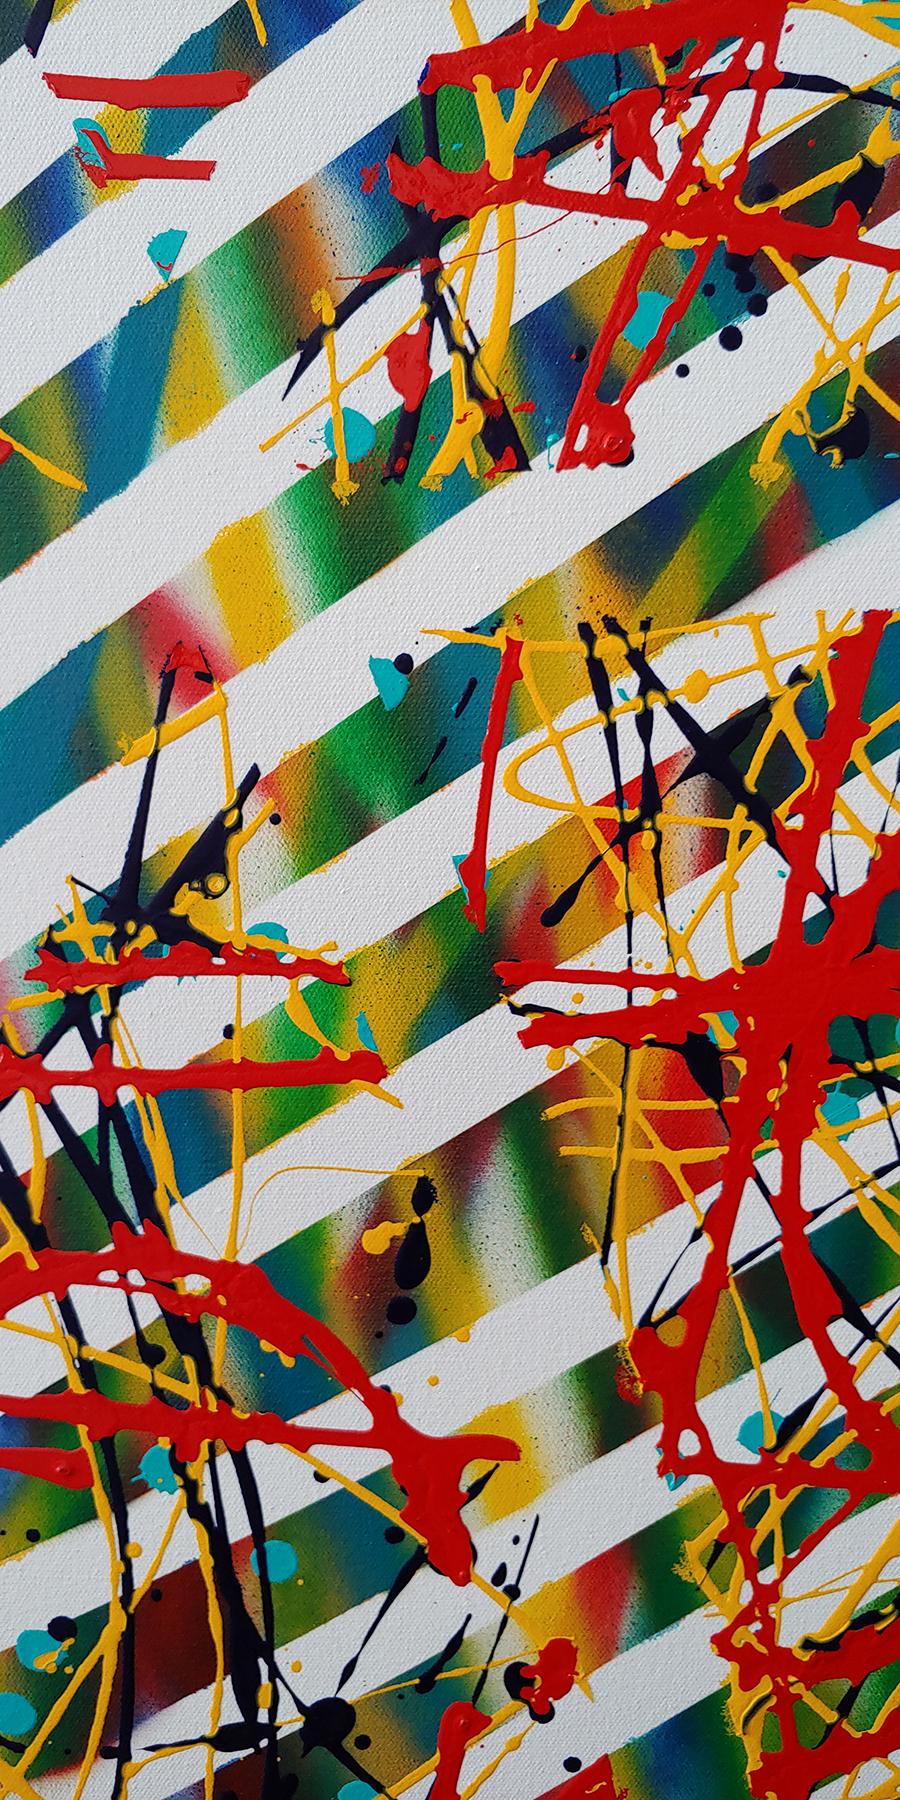 Der Blick wandert über die Oberfläche dieses Gemäldes auf Leinwand von Vince Coyner und studiert die Bewegung und das Zusammenspiel von Punkten, Streifen und getropfter Farbe. Man spürt die Energie, die von diesem Werk ausgeht, und man spürt die